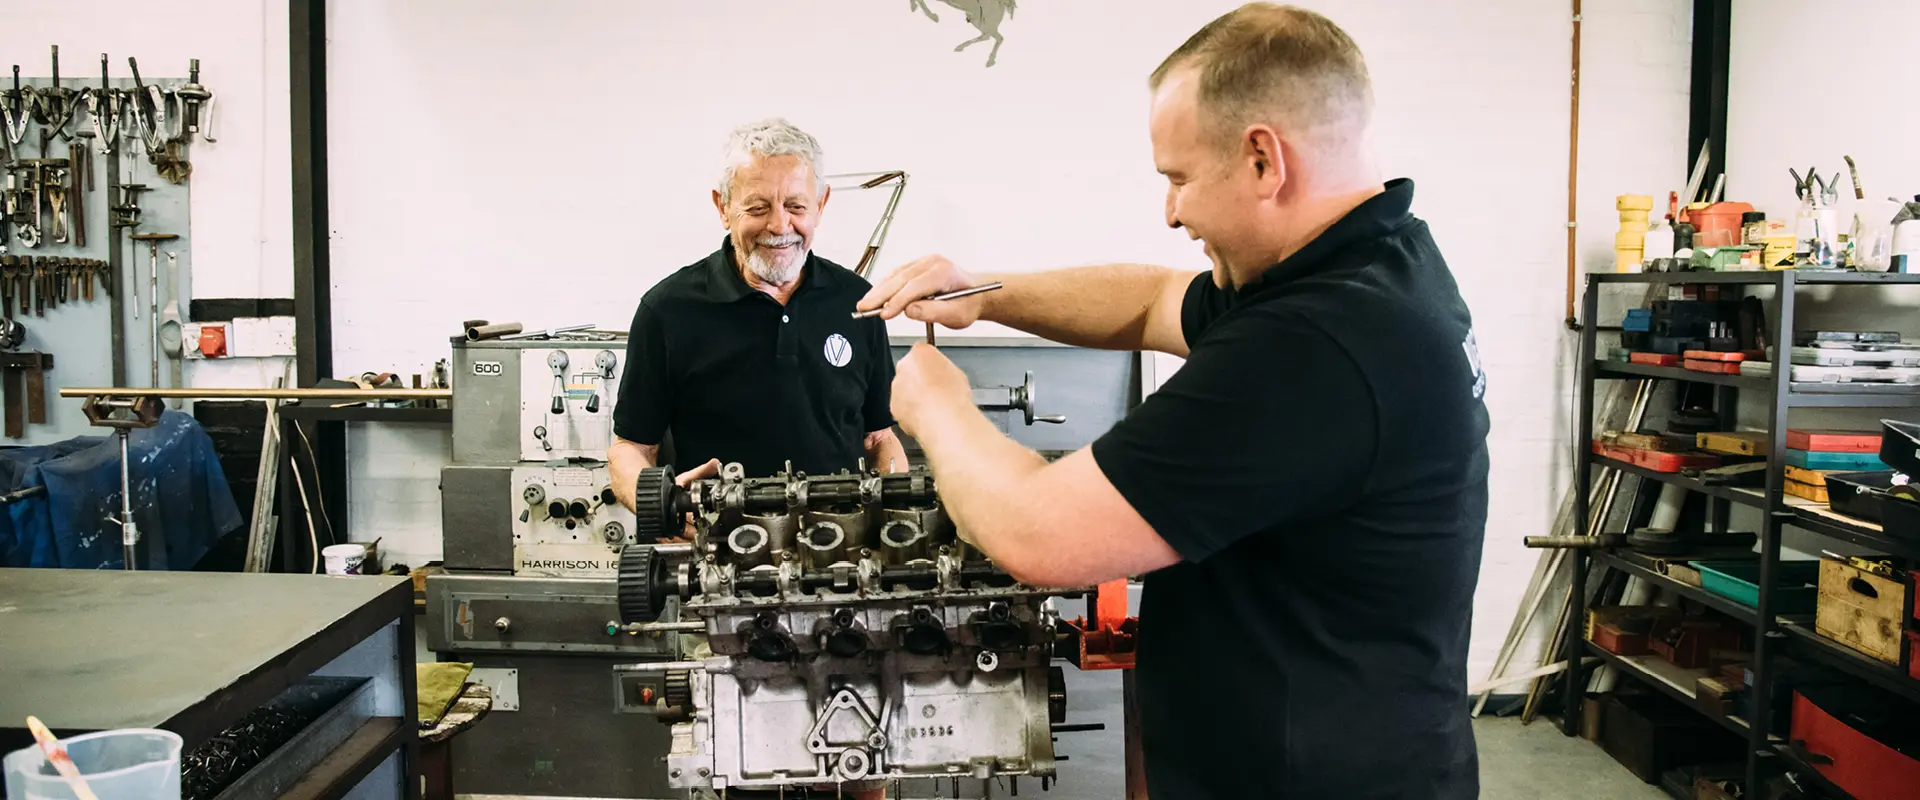 mechanics fixing ferrari engine